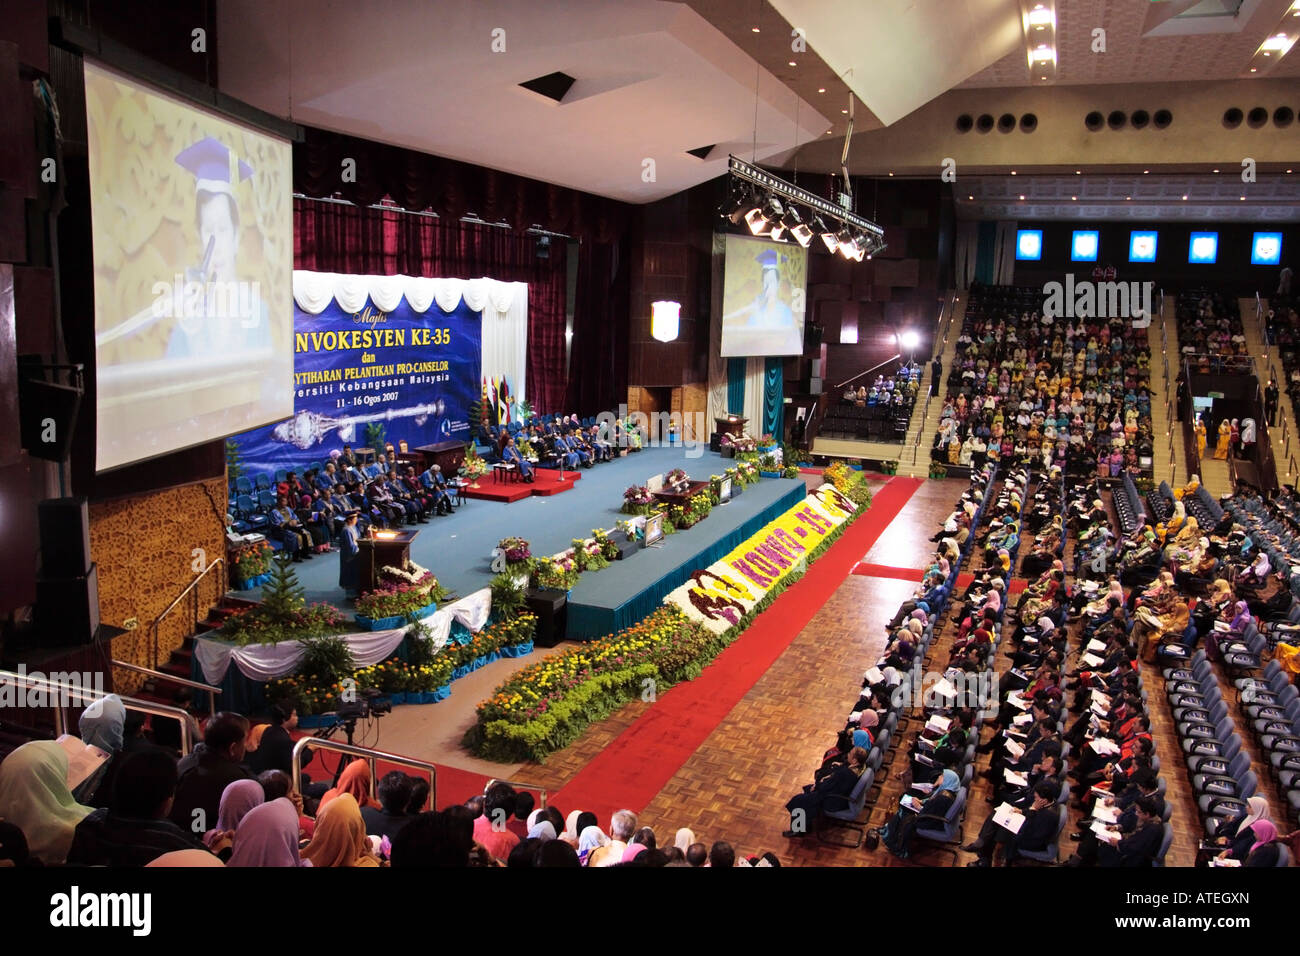 Convocation ceremony at a Malaysian University. Stock Photo